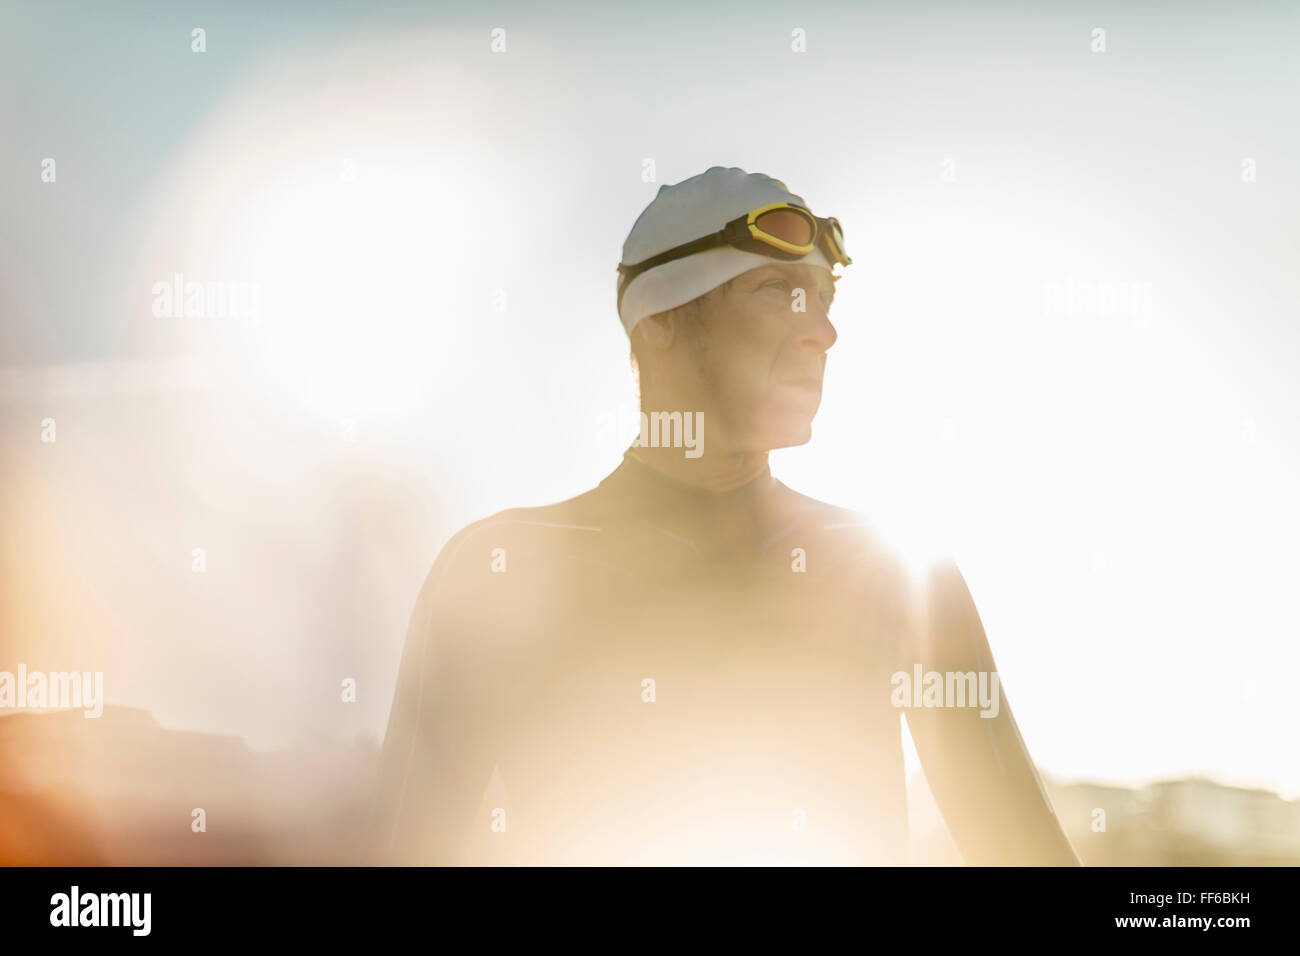 Ein Schwimmer in einen Neoprenanzug schwimmen Hut und Brille. Stockfoto